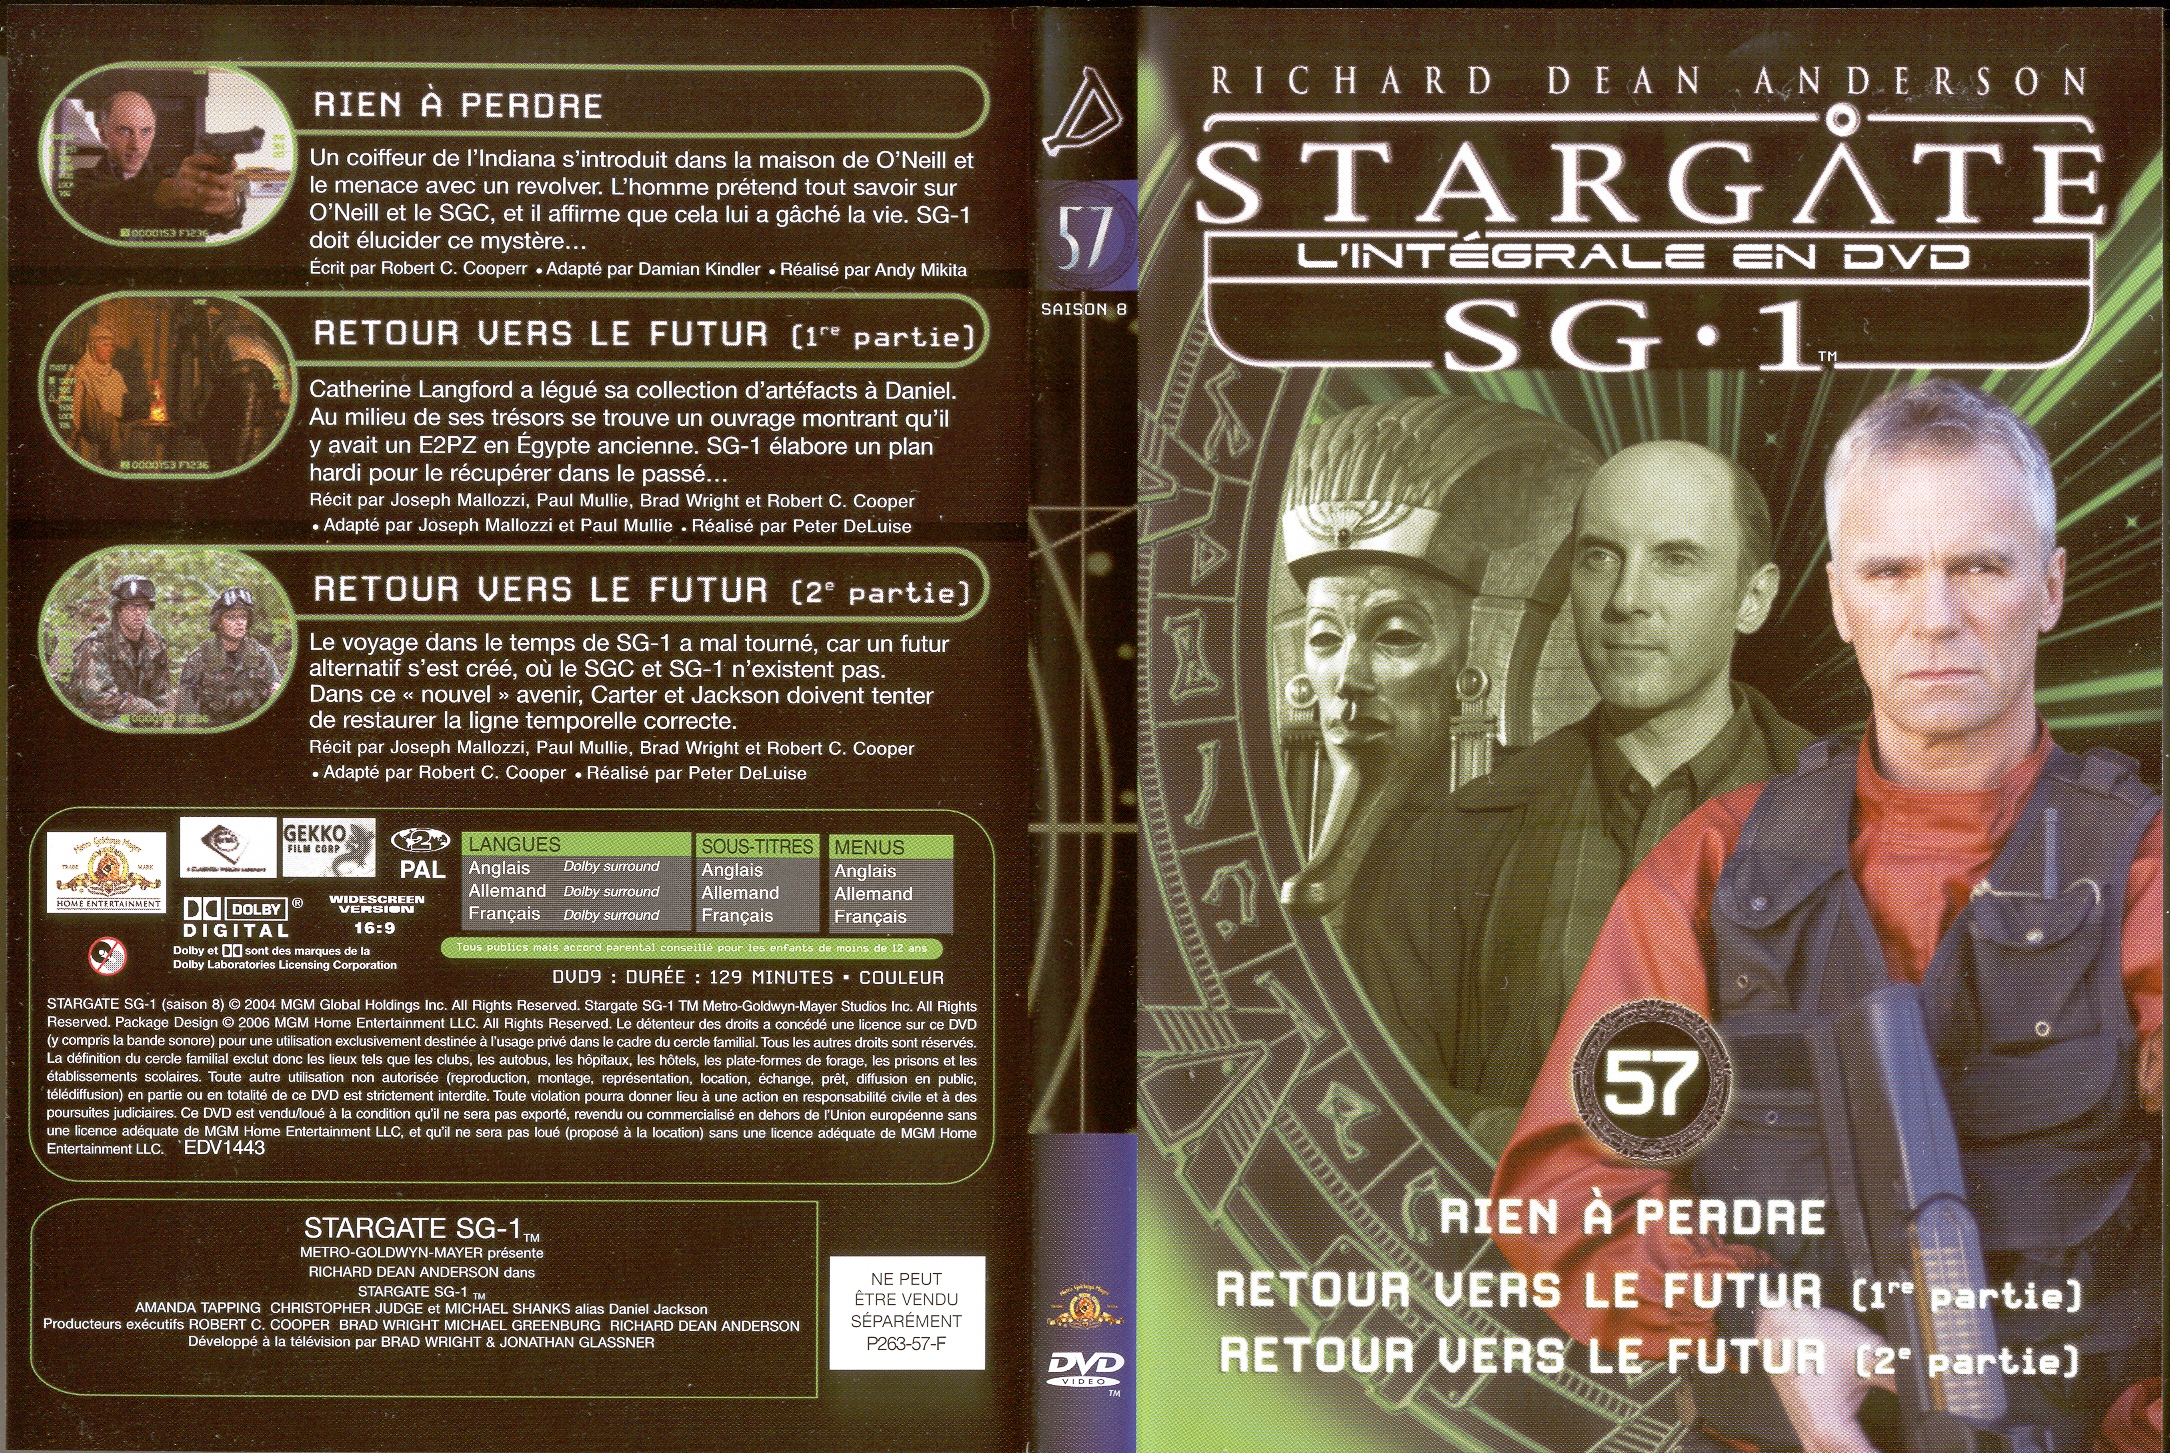 Jaquette DVD Stargate saison 8 vol 57